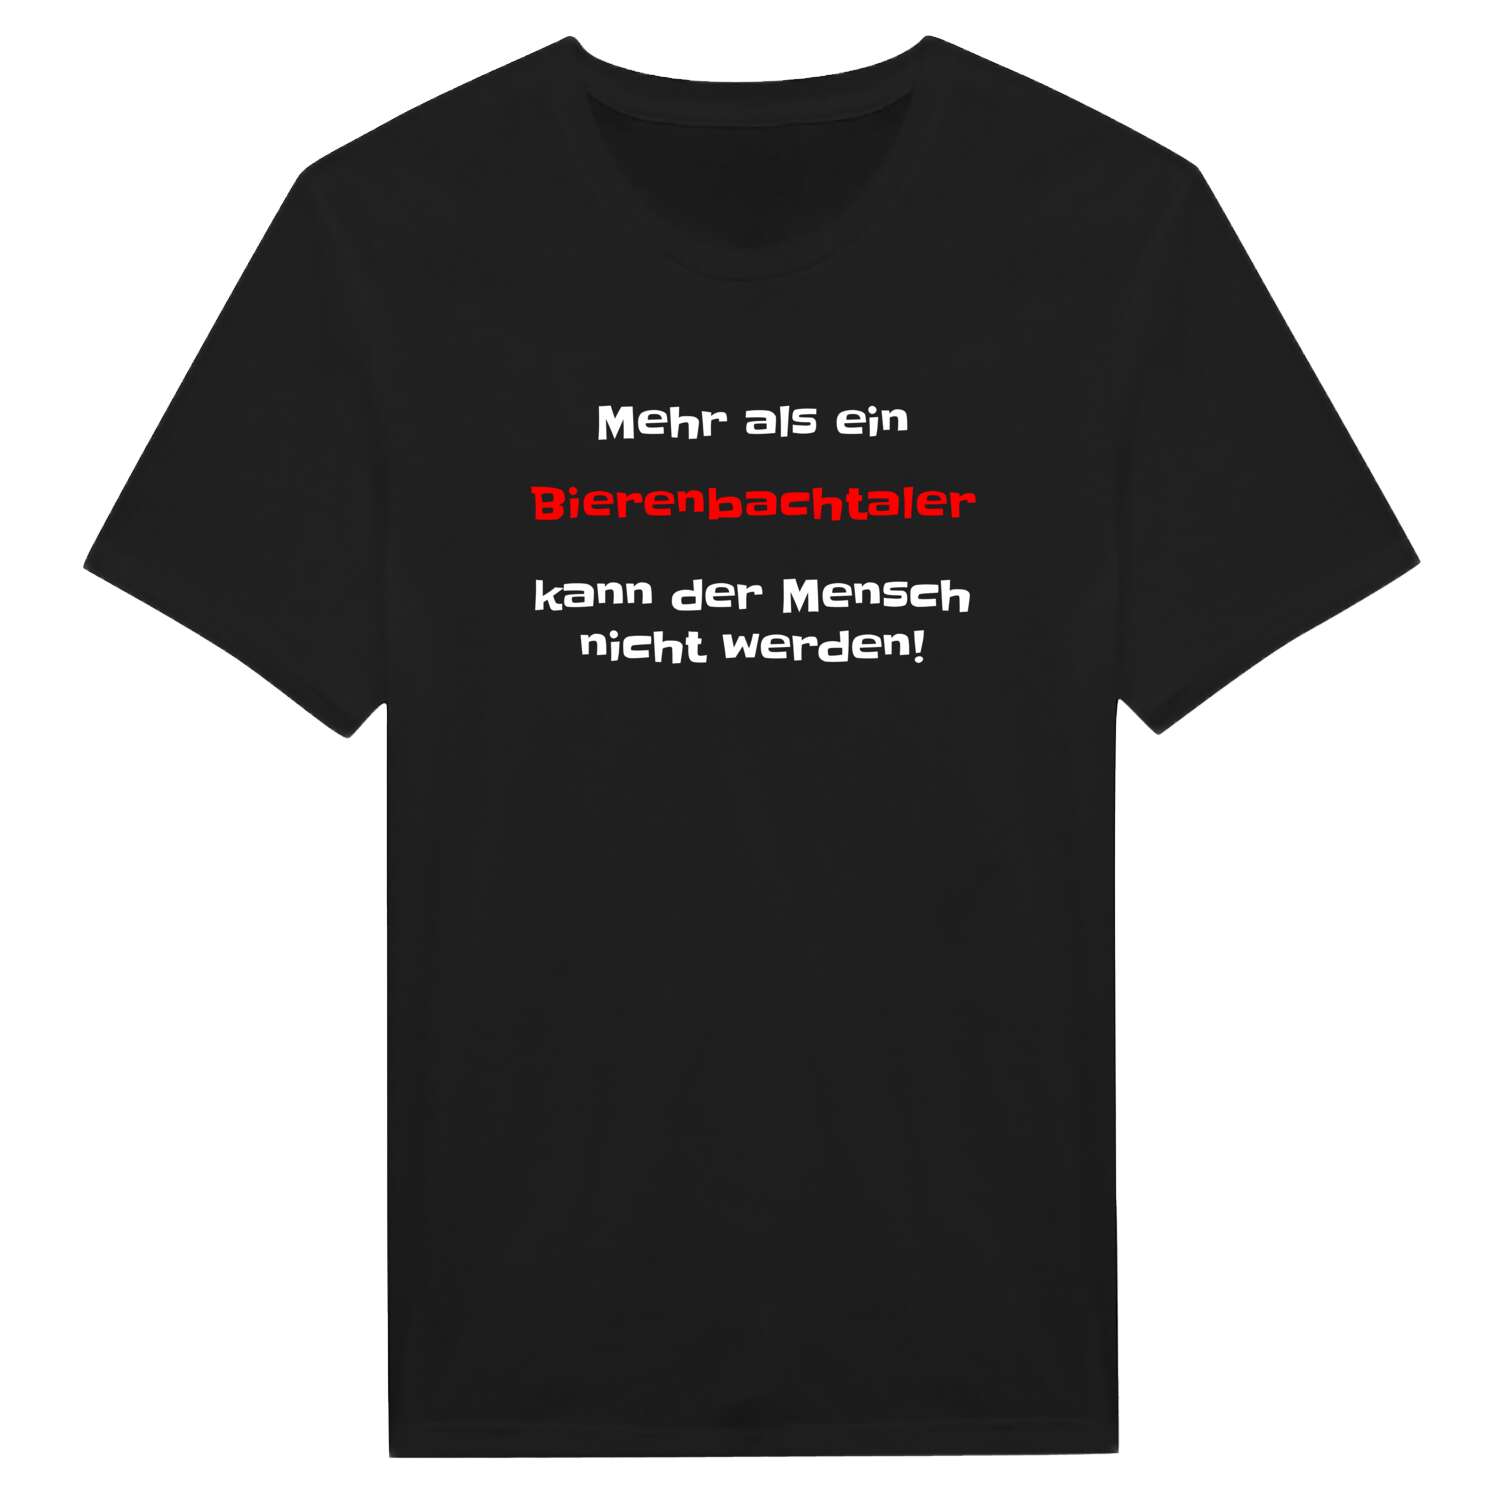 Bierenbachtal T-Shirt »Mehr als ein«